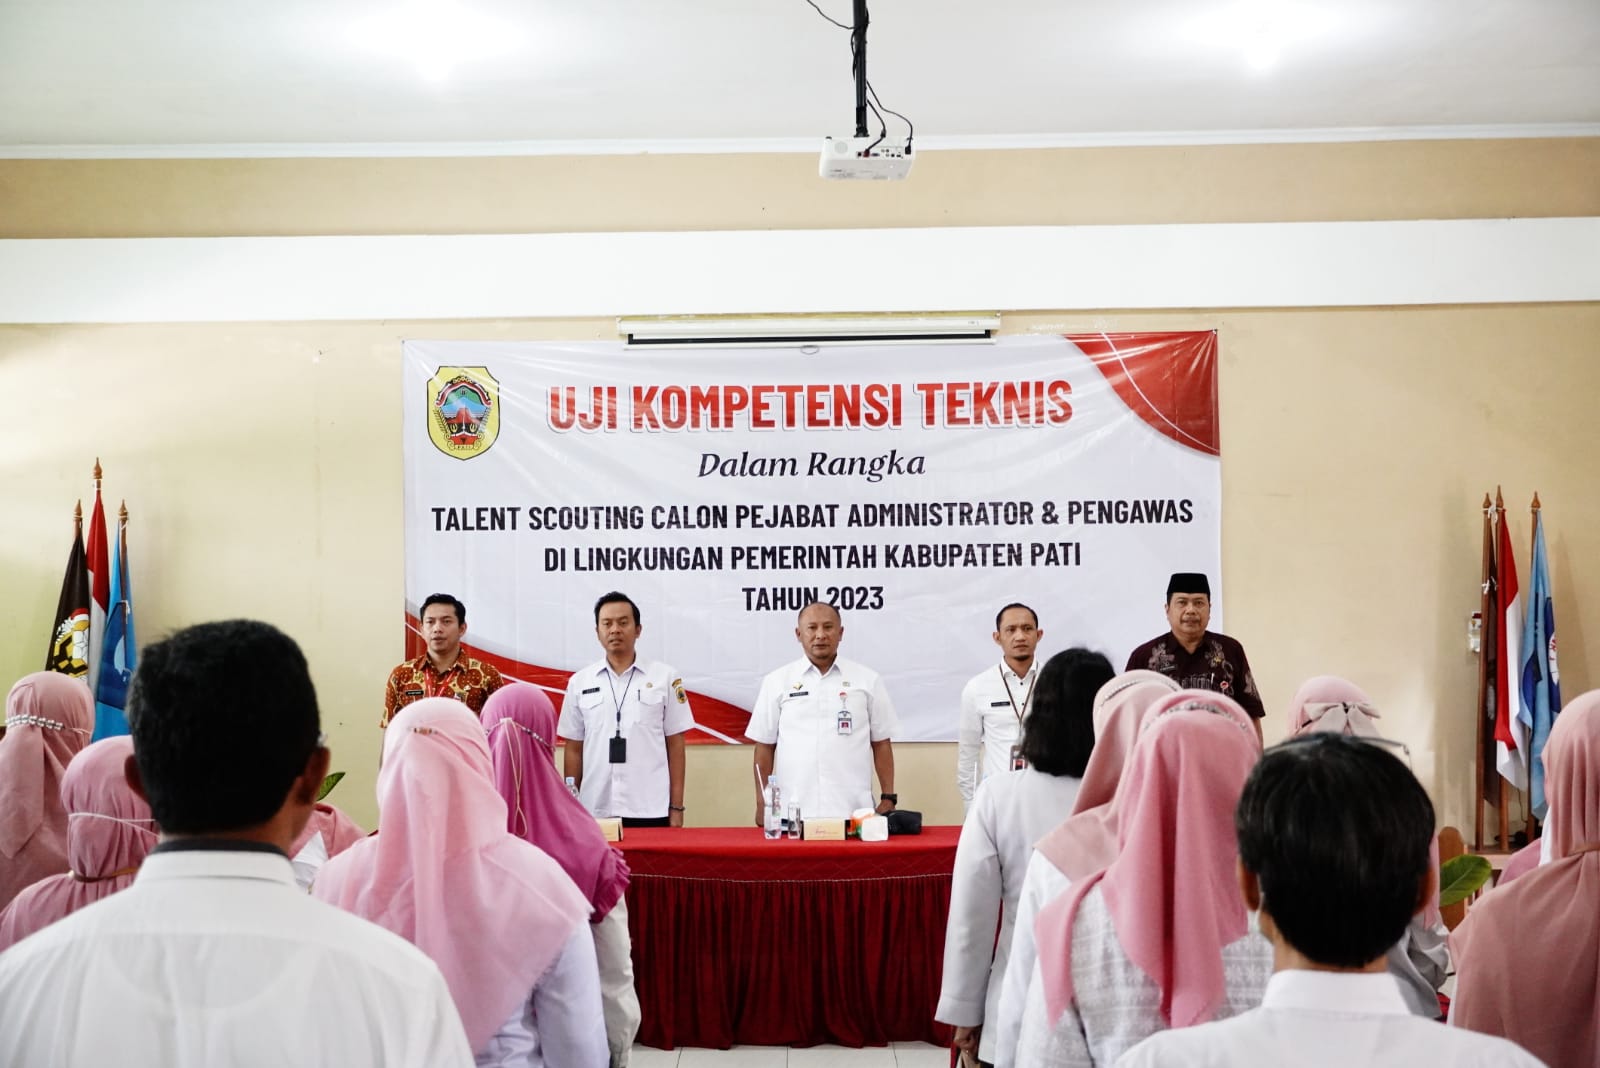 Penjabat Bupati Pati Henggar Budi Anggoro secara resmi membuka uji kompetensi teknis Talent Scouting Calon Pejabat Administrator dan Pengawas di Lingkungan Pemerintah Kabupaten Pati